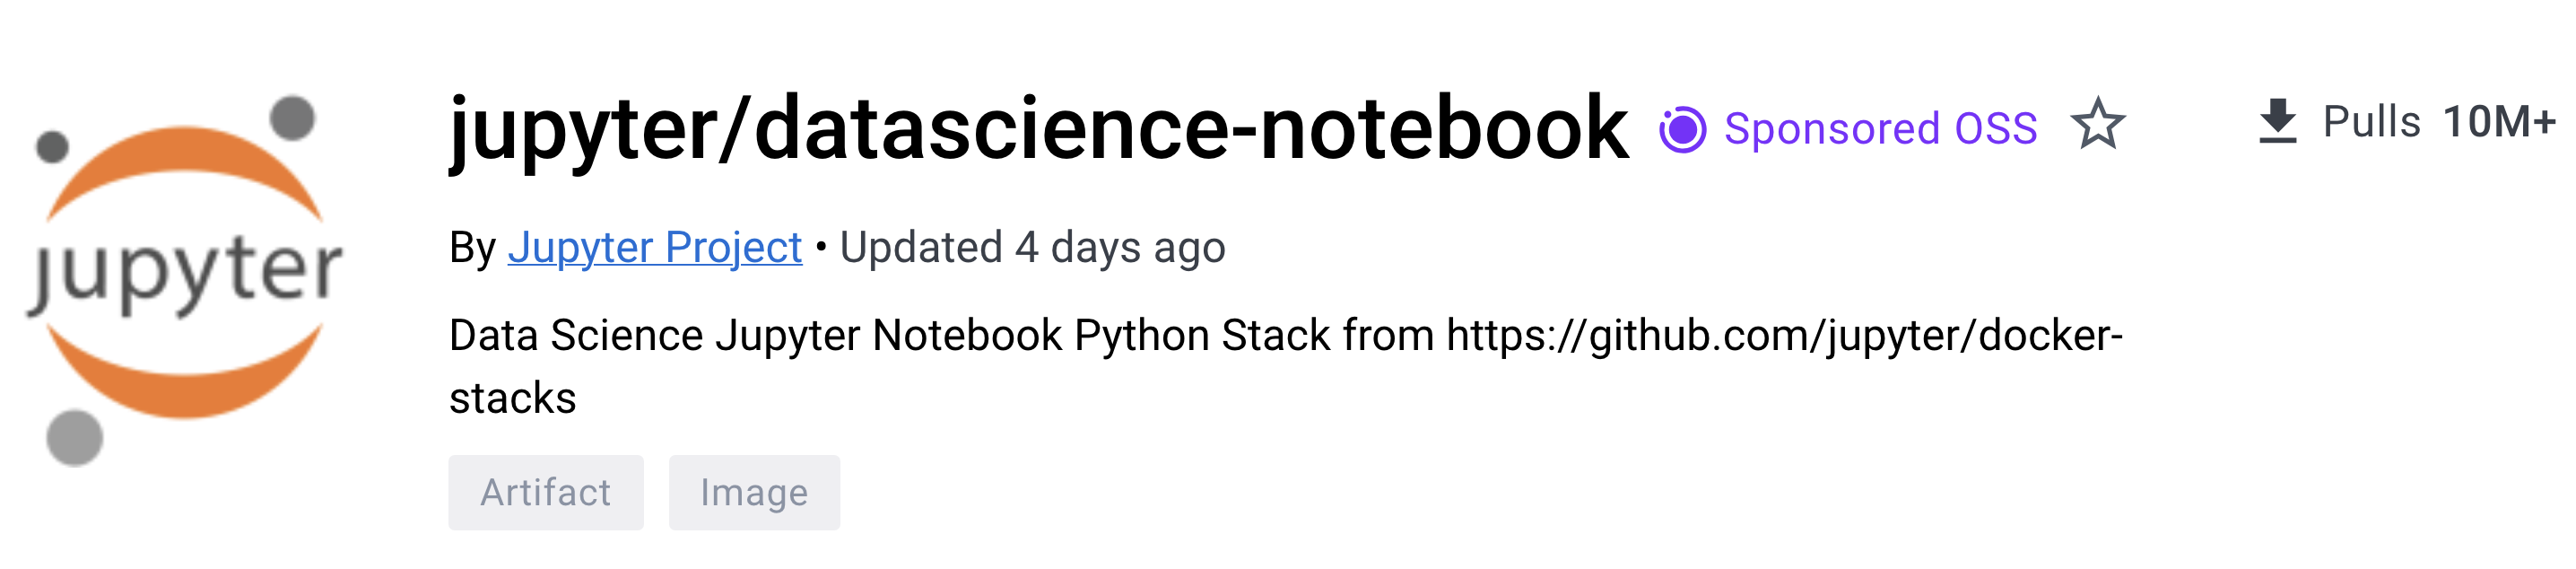 jupyter/datascience-notebook docker image